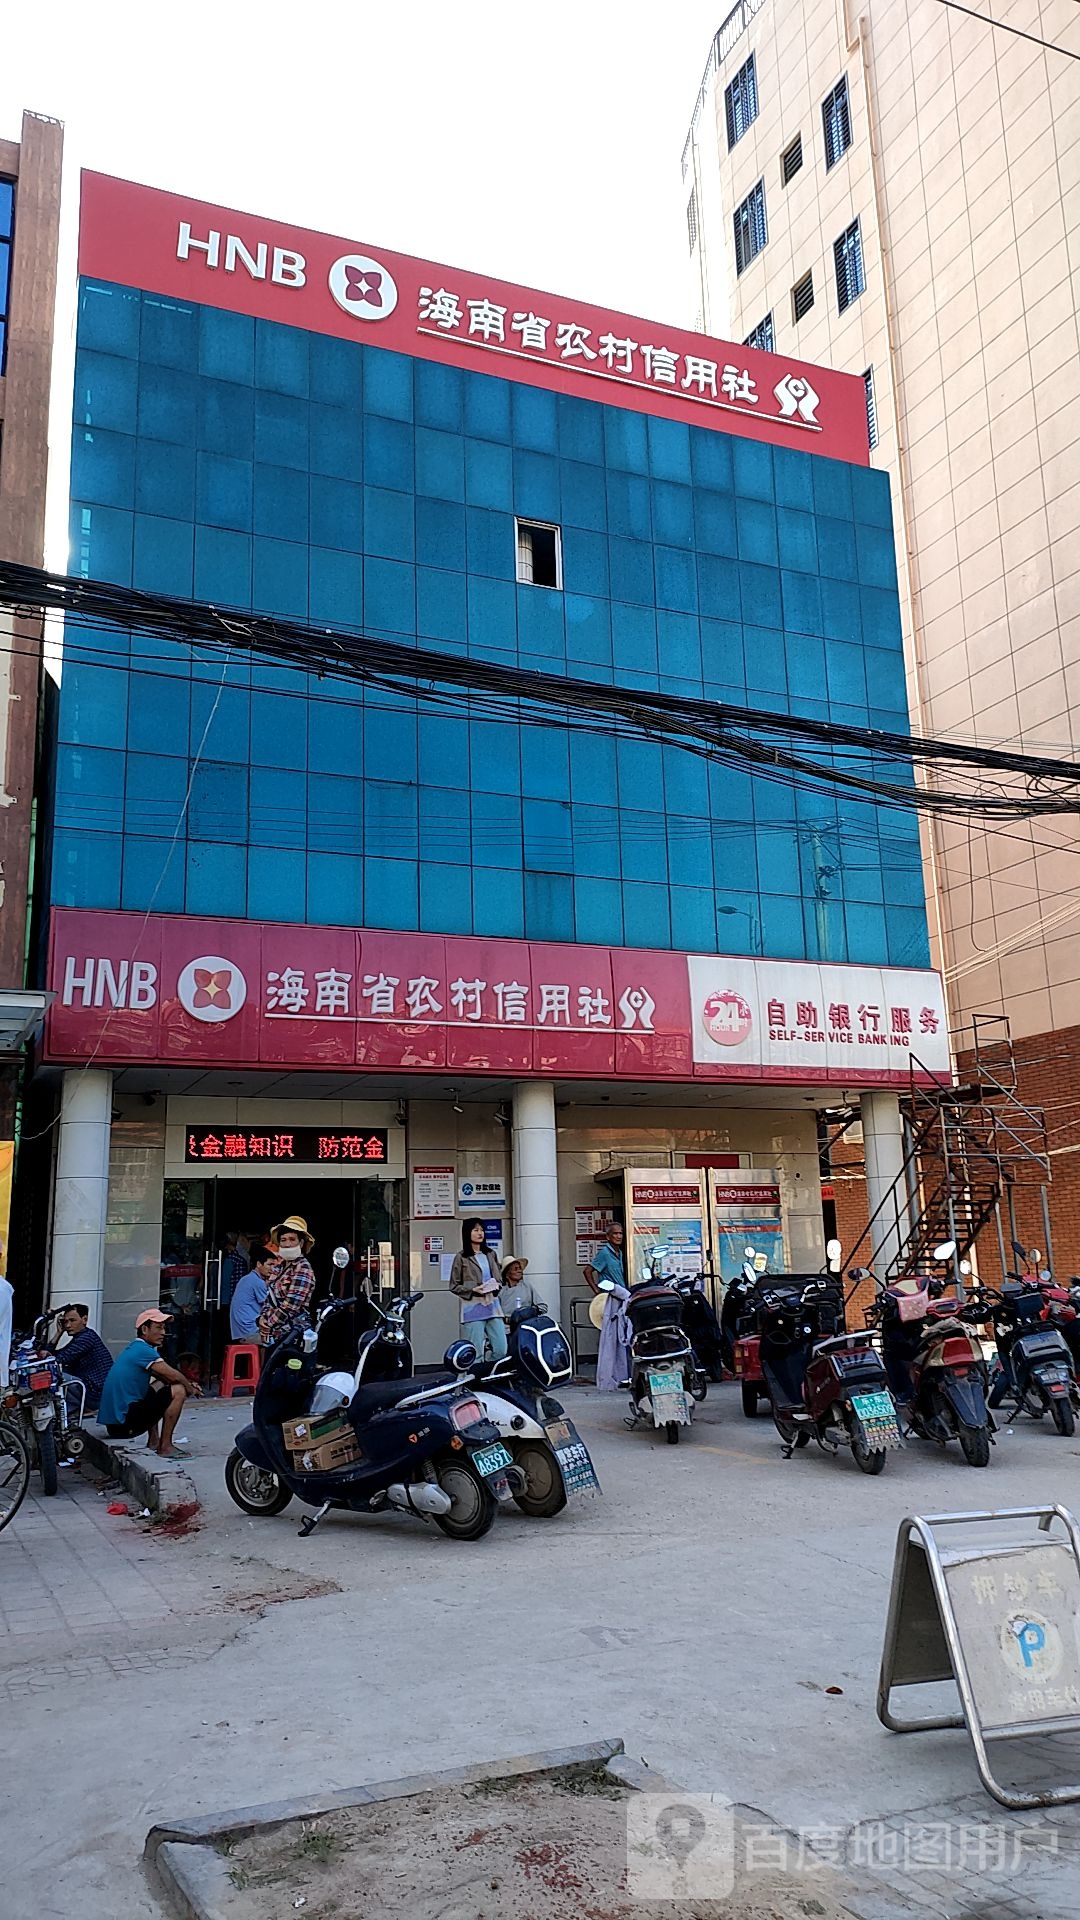 海南省农村信用社24小时自助银行